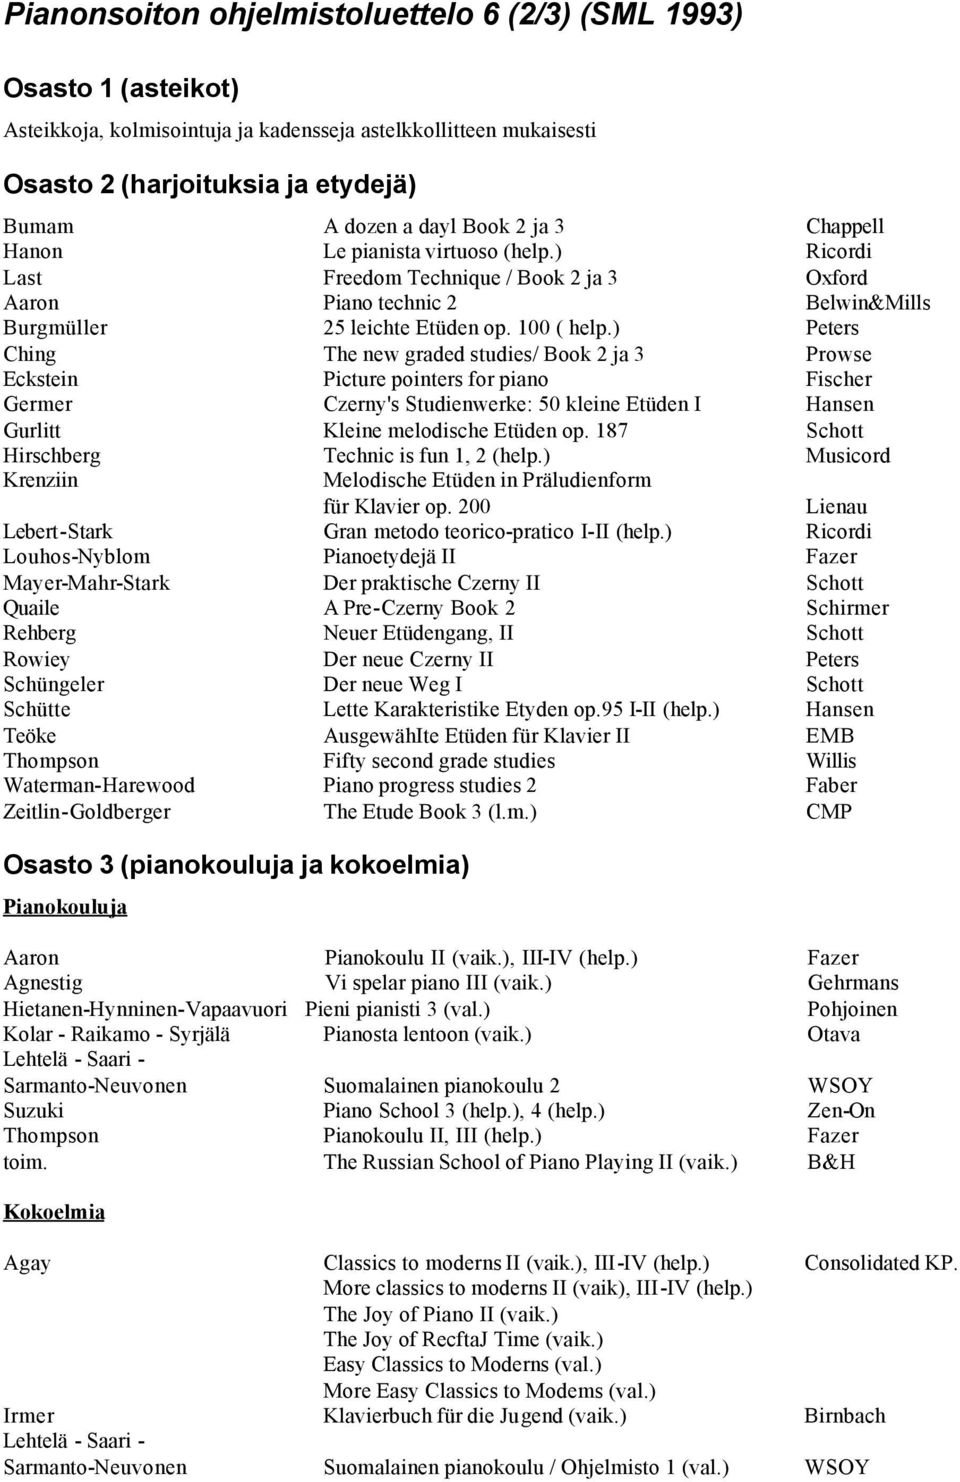 ) Ching The new graded studies/ Book 2 ja 3 Prowse Eckstein Picture pointers for piano Fischer Germer Czerny's Studienwerke: 50 kleine Etüden I Hansen Gurlitt Kleine melodische Etüden op.